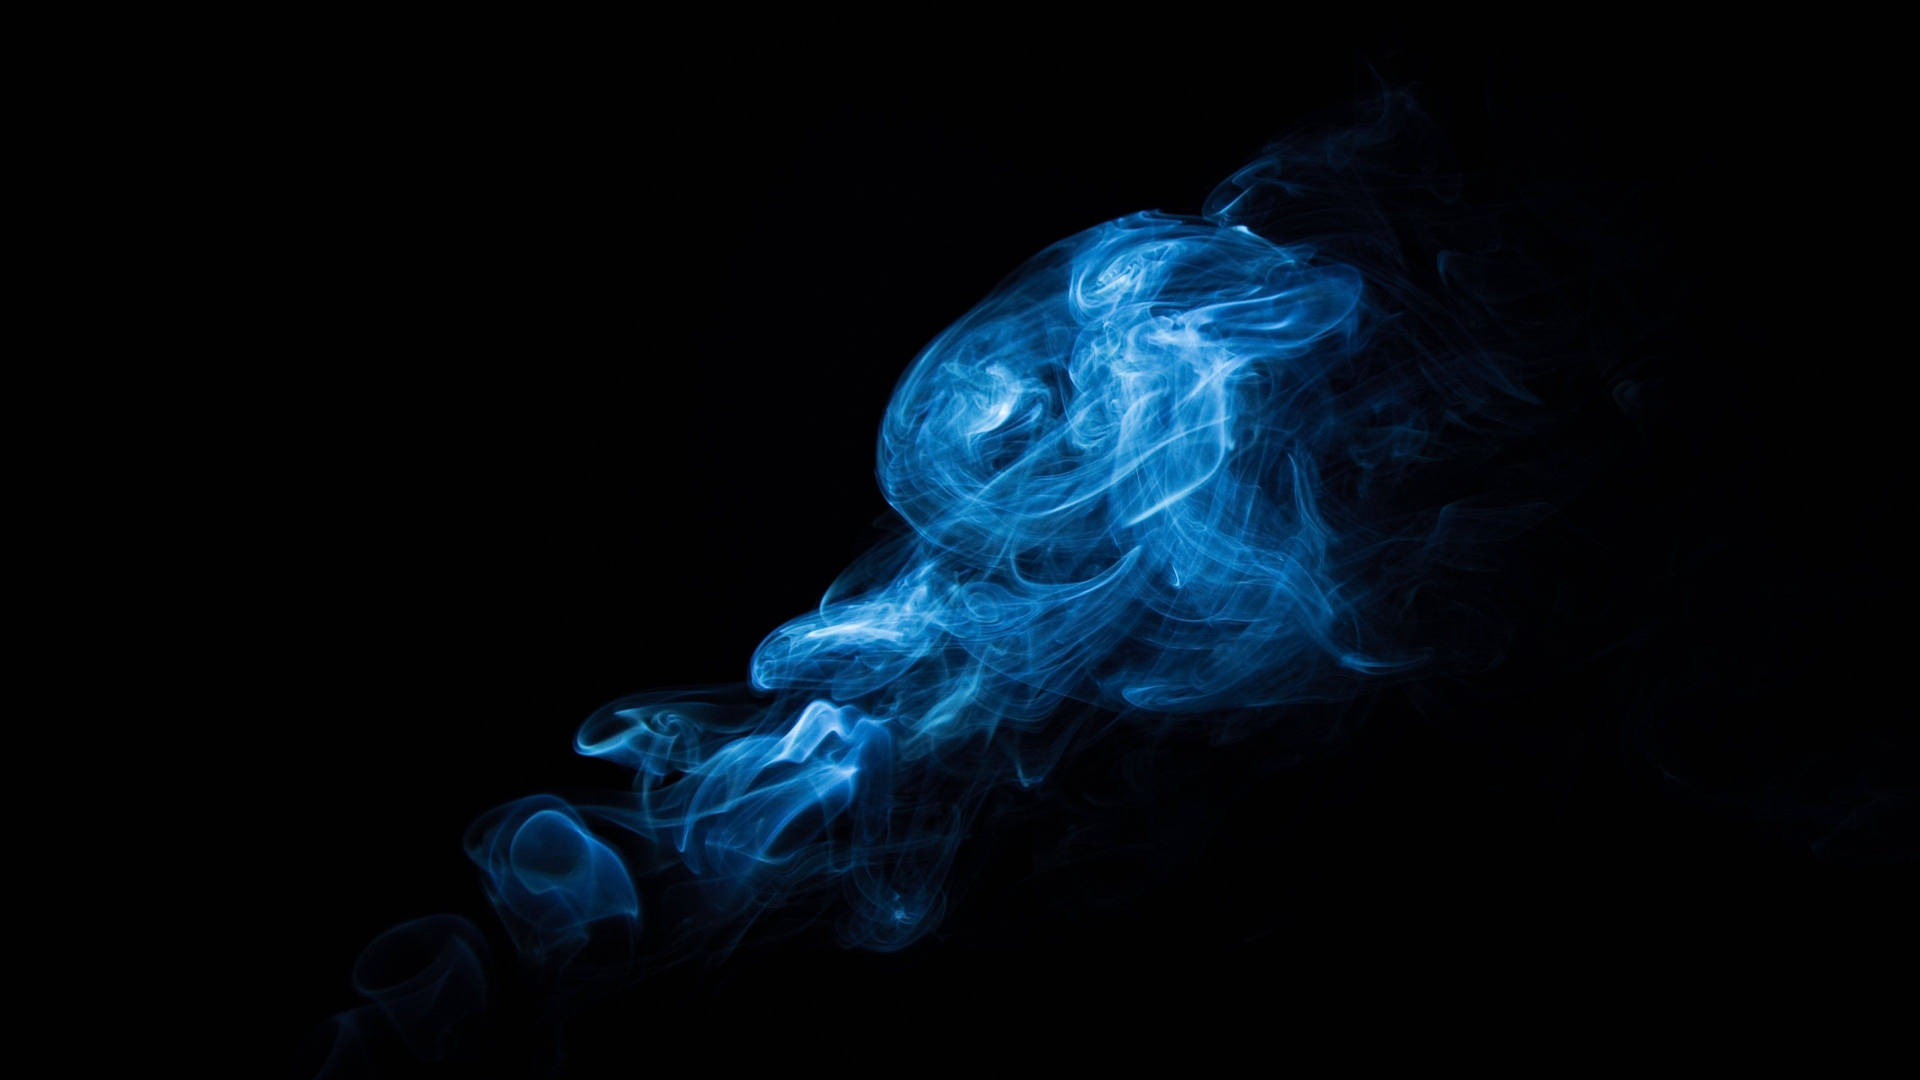 Caption: Majestic Blue Smoke With Striking White Streaks